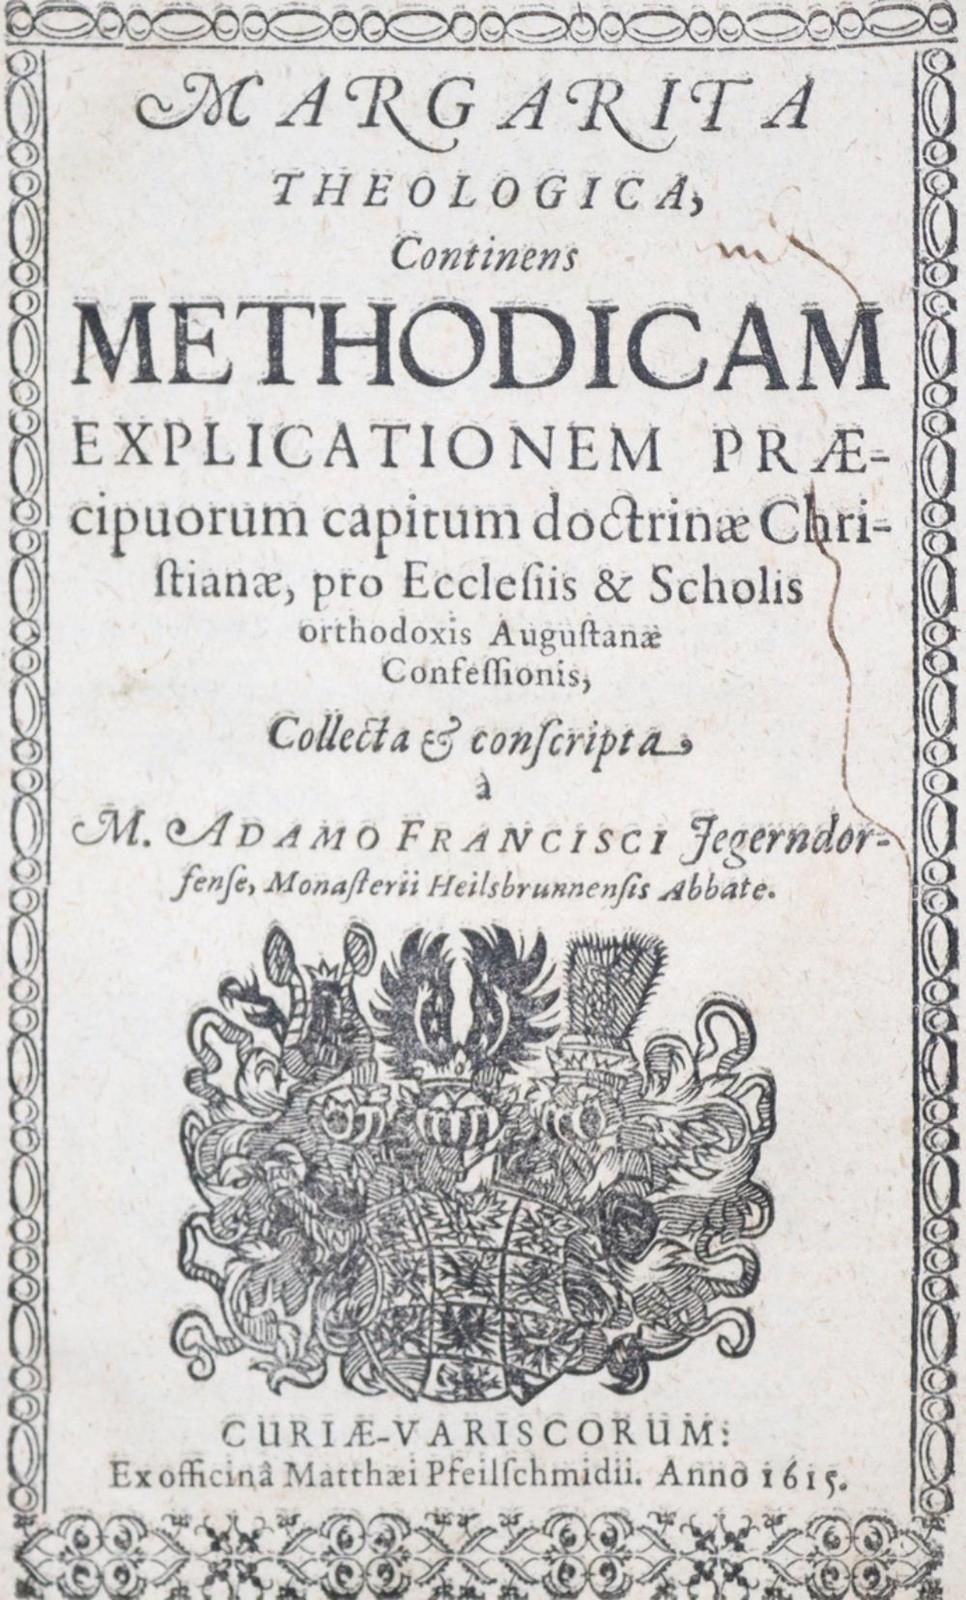 Bidembach,F. Manuale Ministrorum ecclesiae, Handbuch darinnen volgende sieben St&hellip;